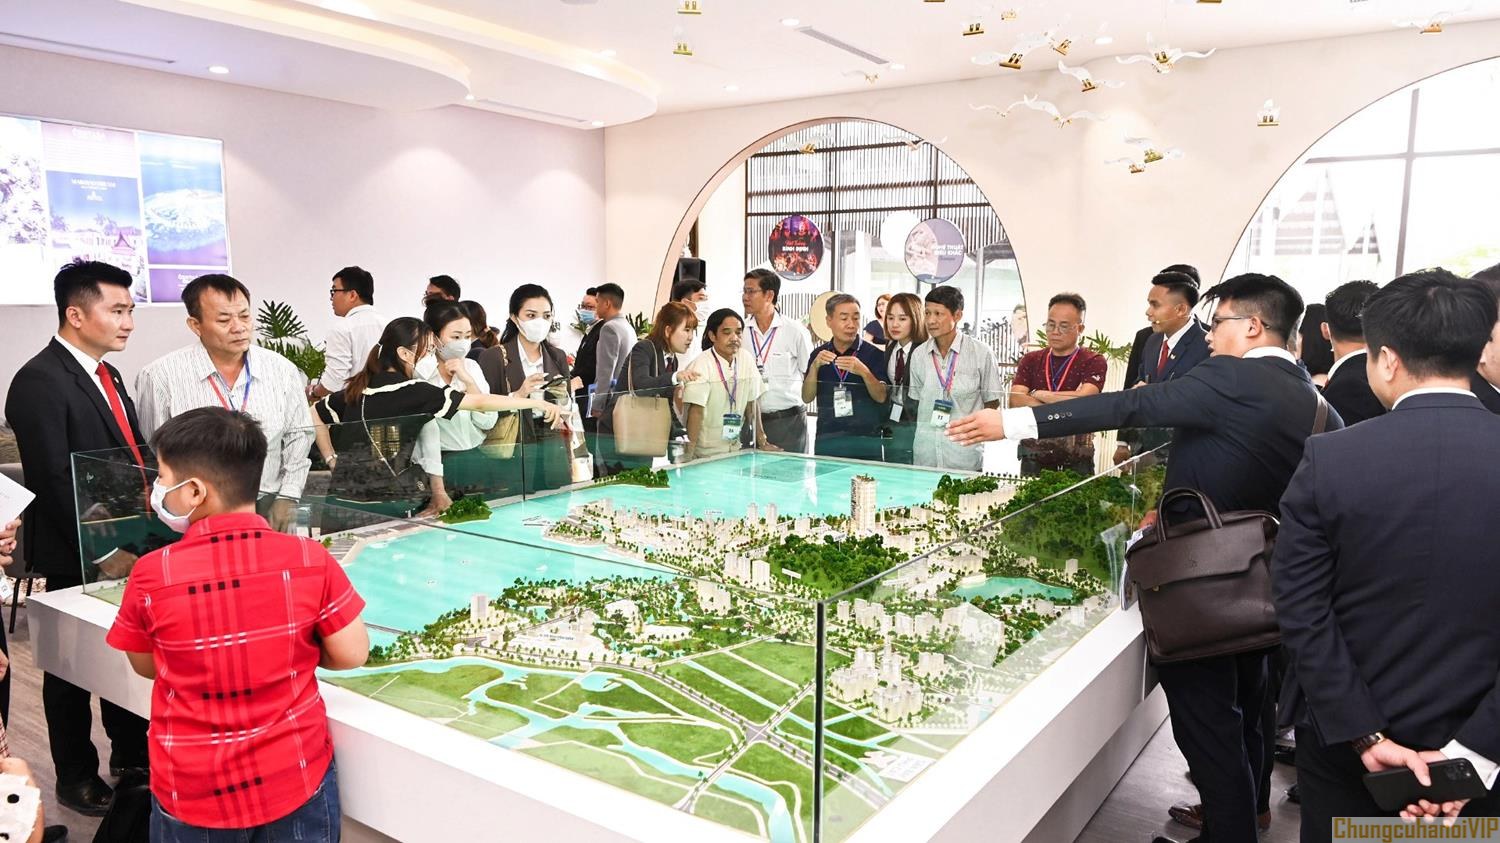 sự kiện khai trương nhà mẫu CADIA Quy Nhon đã chính thức diễn ra và thu hút sự quan tâm của đông đảo giới đầu tư, cho thấy sức hấp dẫn của dòng căn hộ du lịch trải nghiệm tại thị trường bất động sản của thành phố biển xinh đẹp.